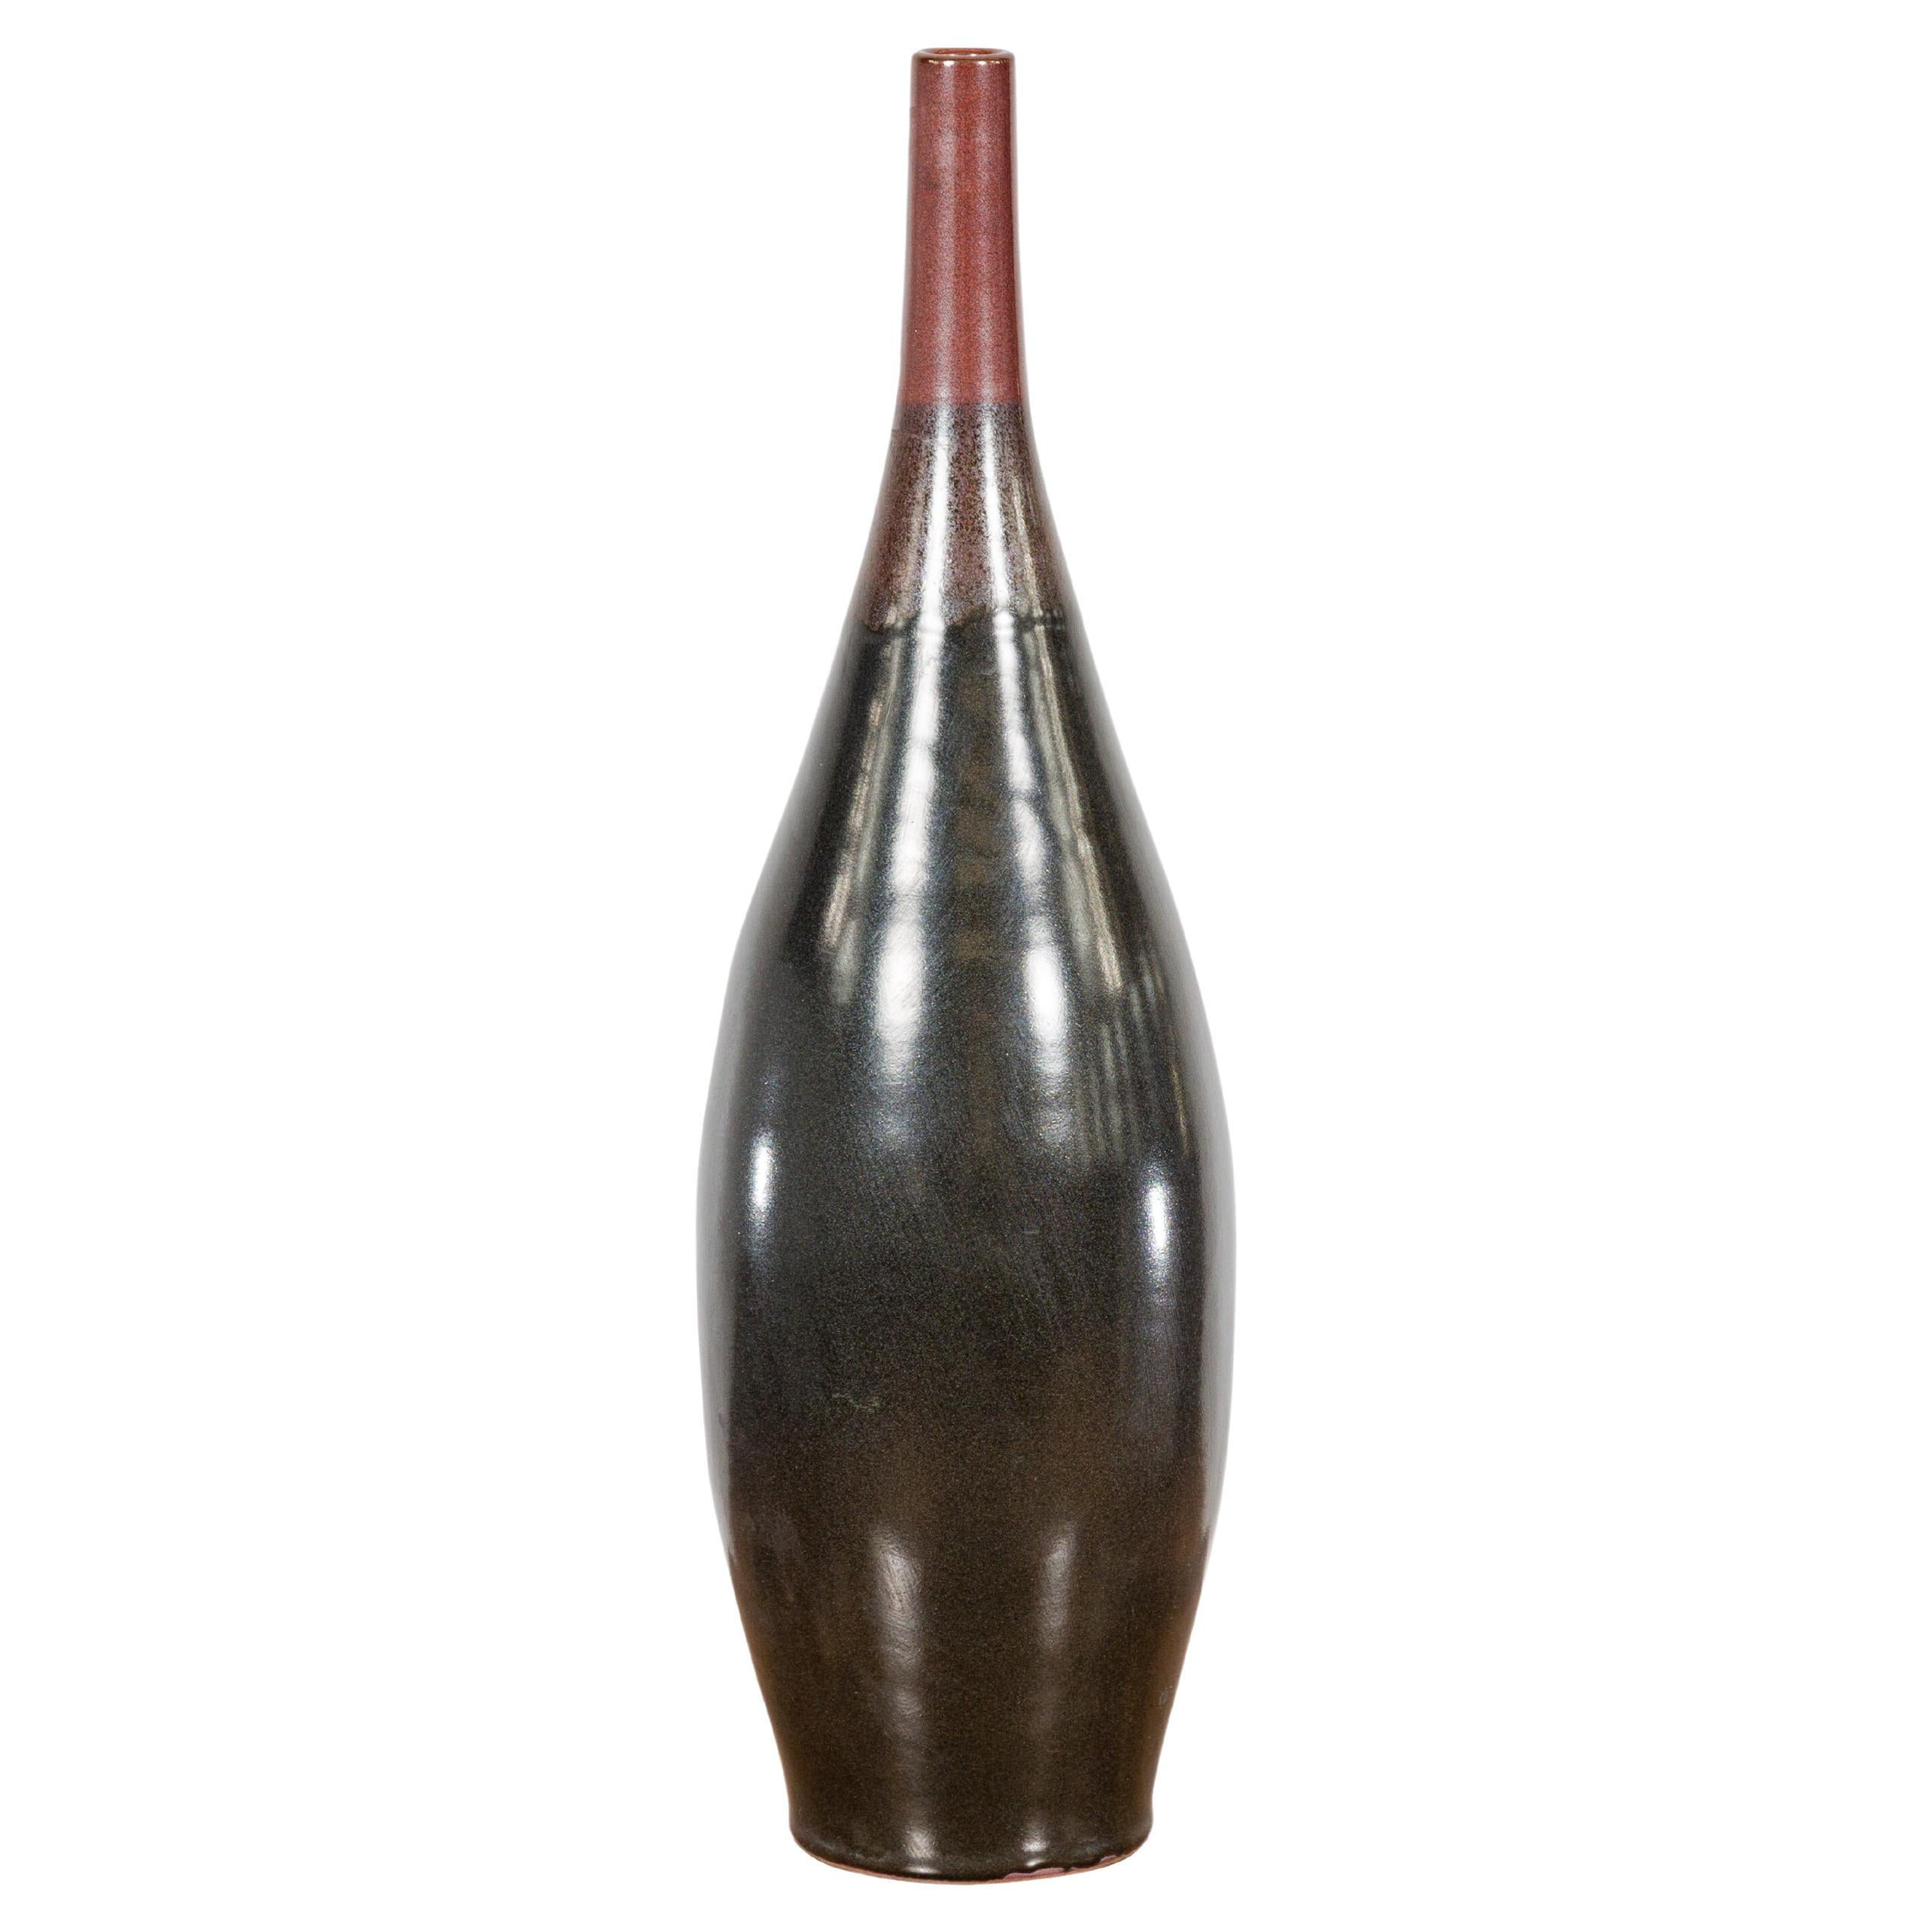 Schlichte mehrfarbig glasierte Vase aus roter, brauner und schwarzer Keramik mit schmaler Mündung